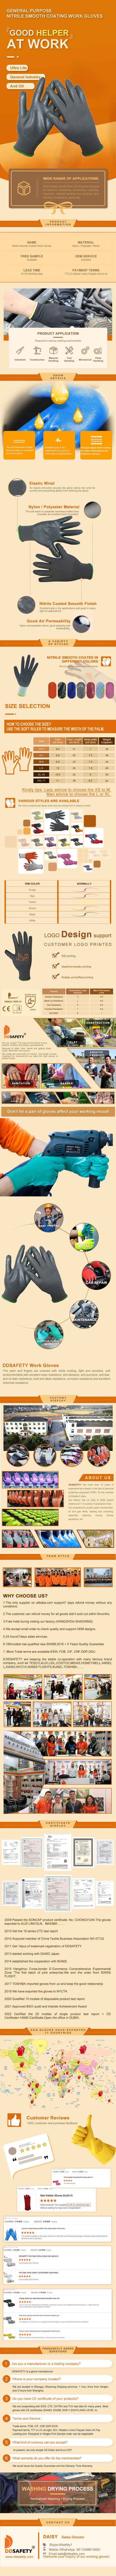 Heavy Duty Work Gloves - DNN341  Heavy Duty Work Gloves - DNN341  gloves,work gloves,heavy duty gloves,Heavy Duty Work Gloves